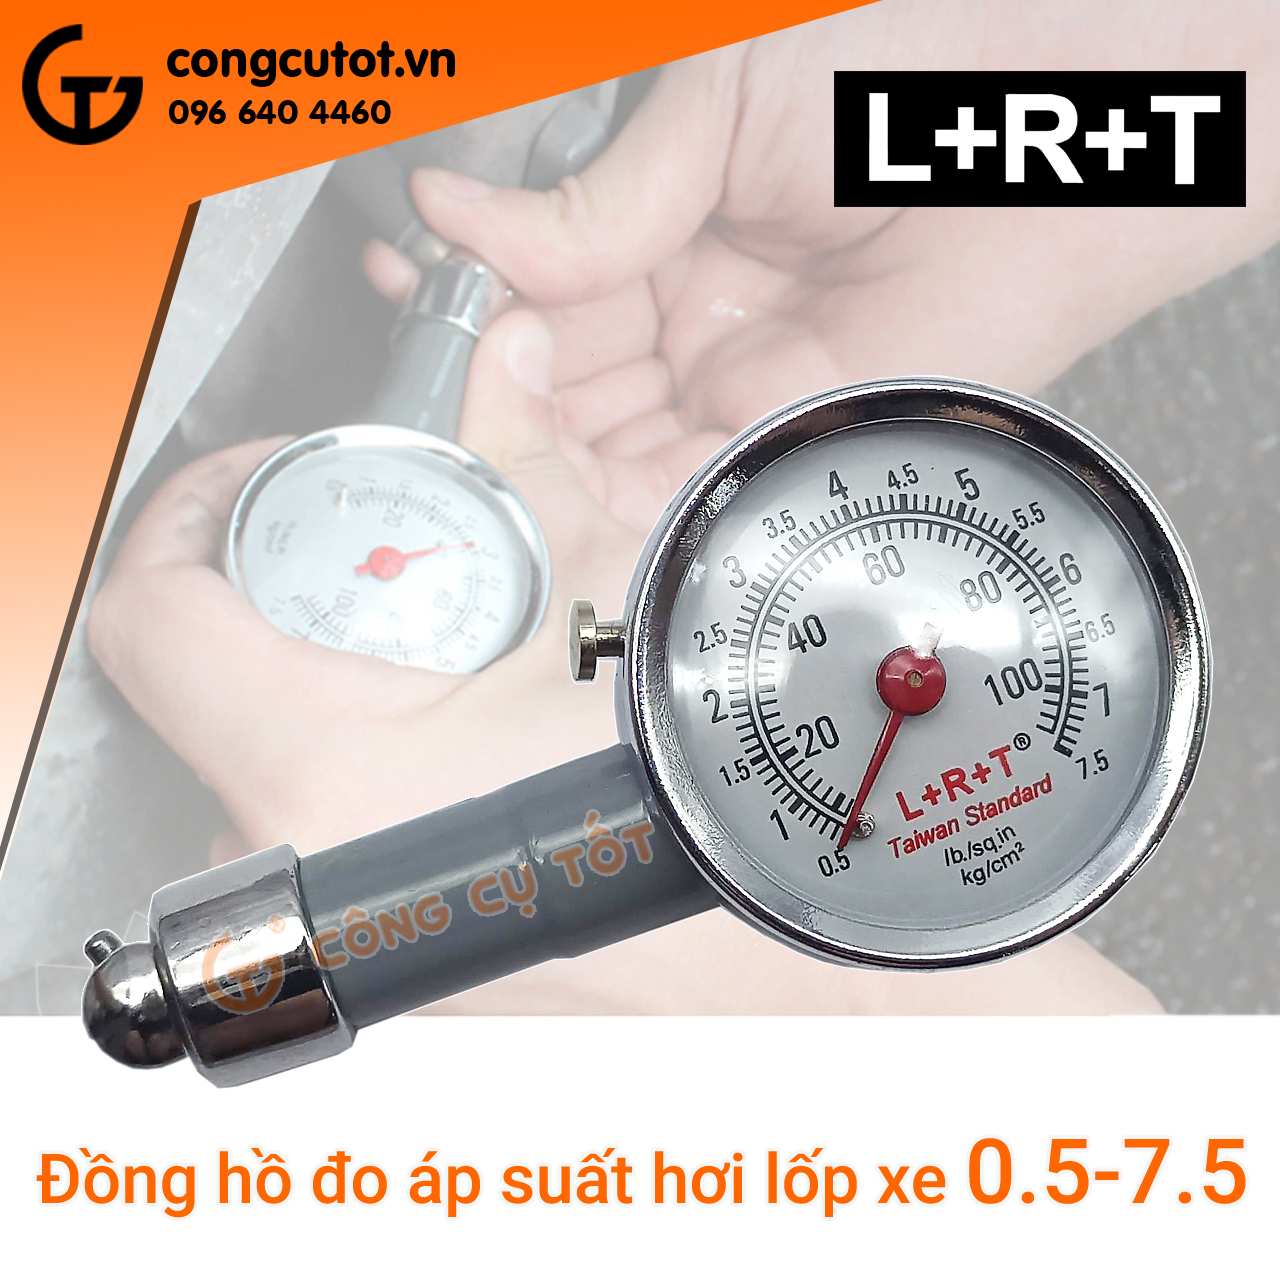 Đồng hồ đo áp suất hơi lốp xe theo đơn vị cân hơi hiệu LRT